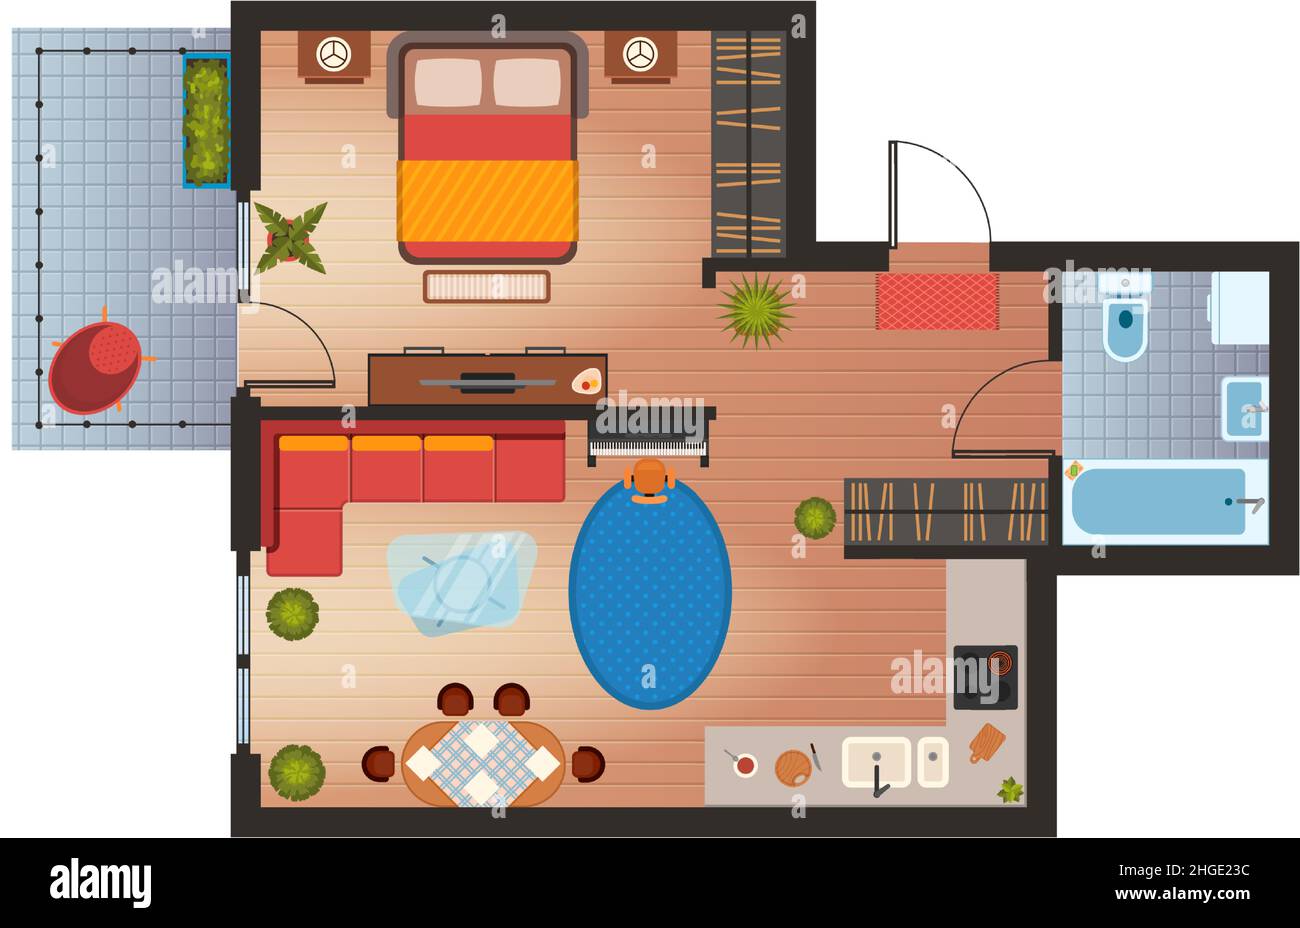 Appartement oder Haus Grundriß mit Möbeln Draufsicht. Flaches Zimmer im Architekturdesign. Wohnzimmer, Küche, Schlafzimmer und Bad Vektor-Plan Stock Vektor